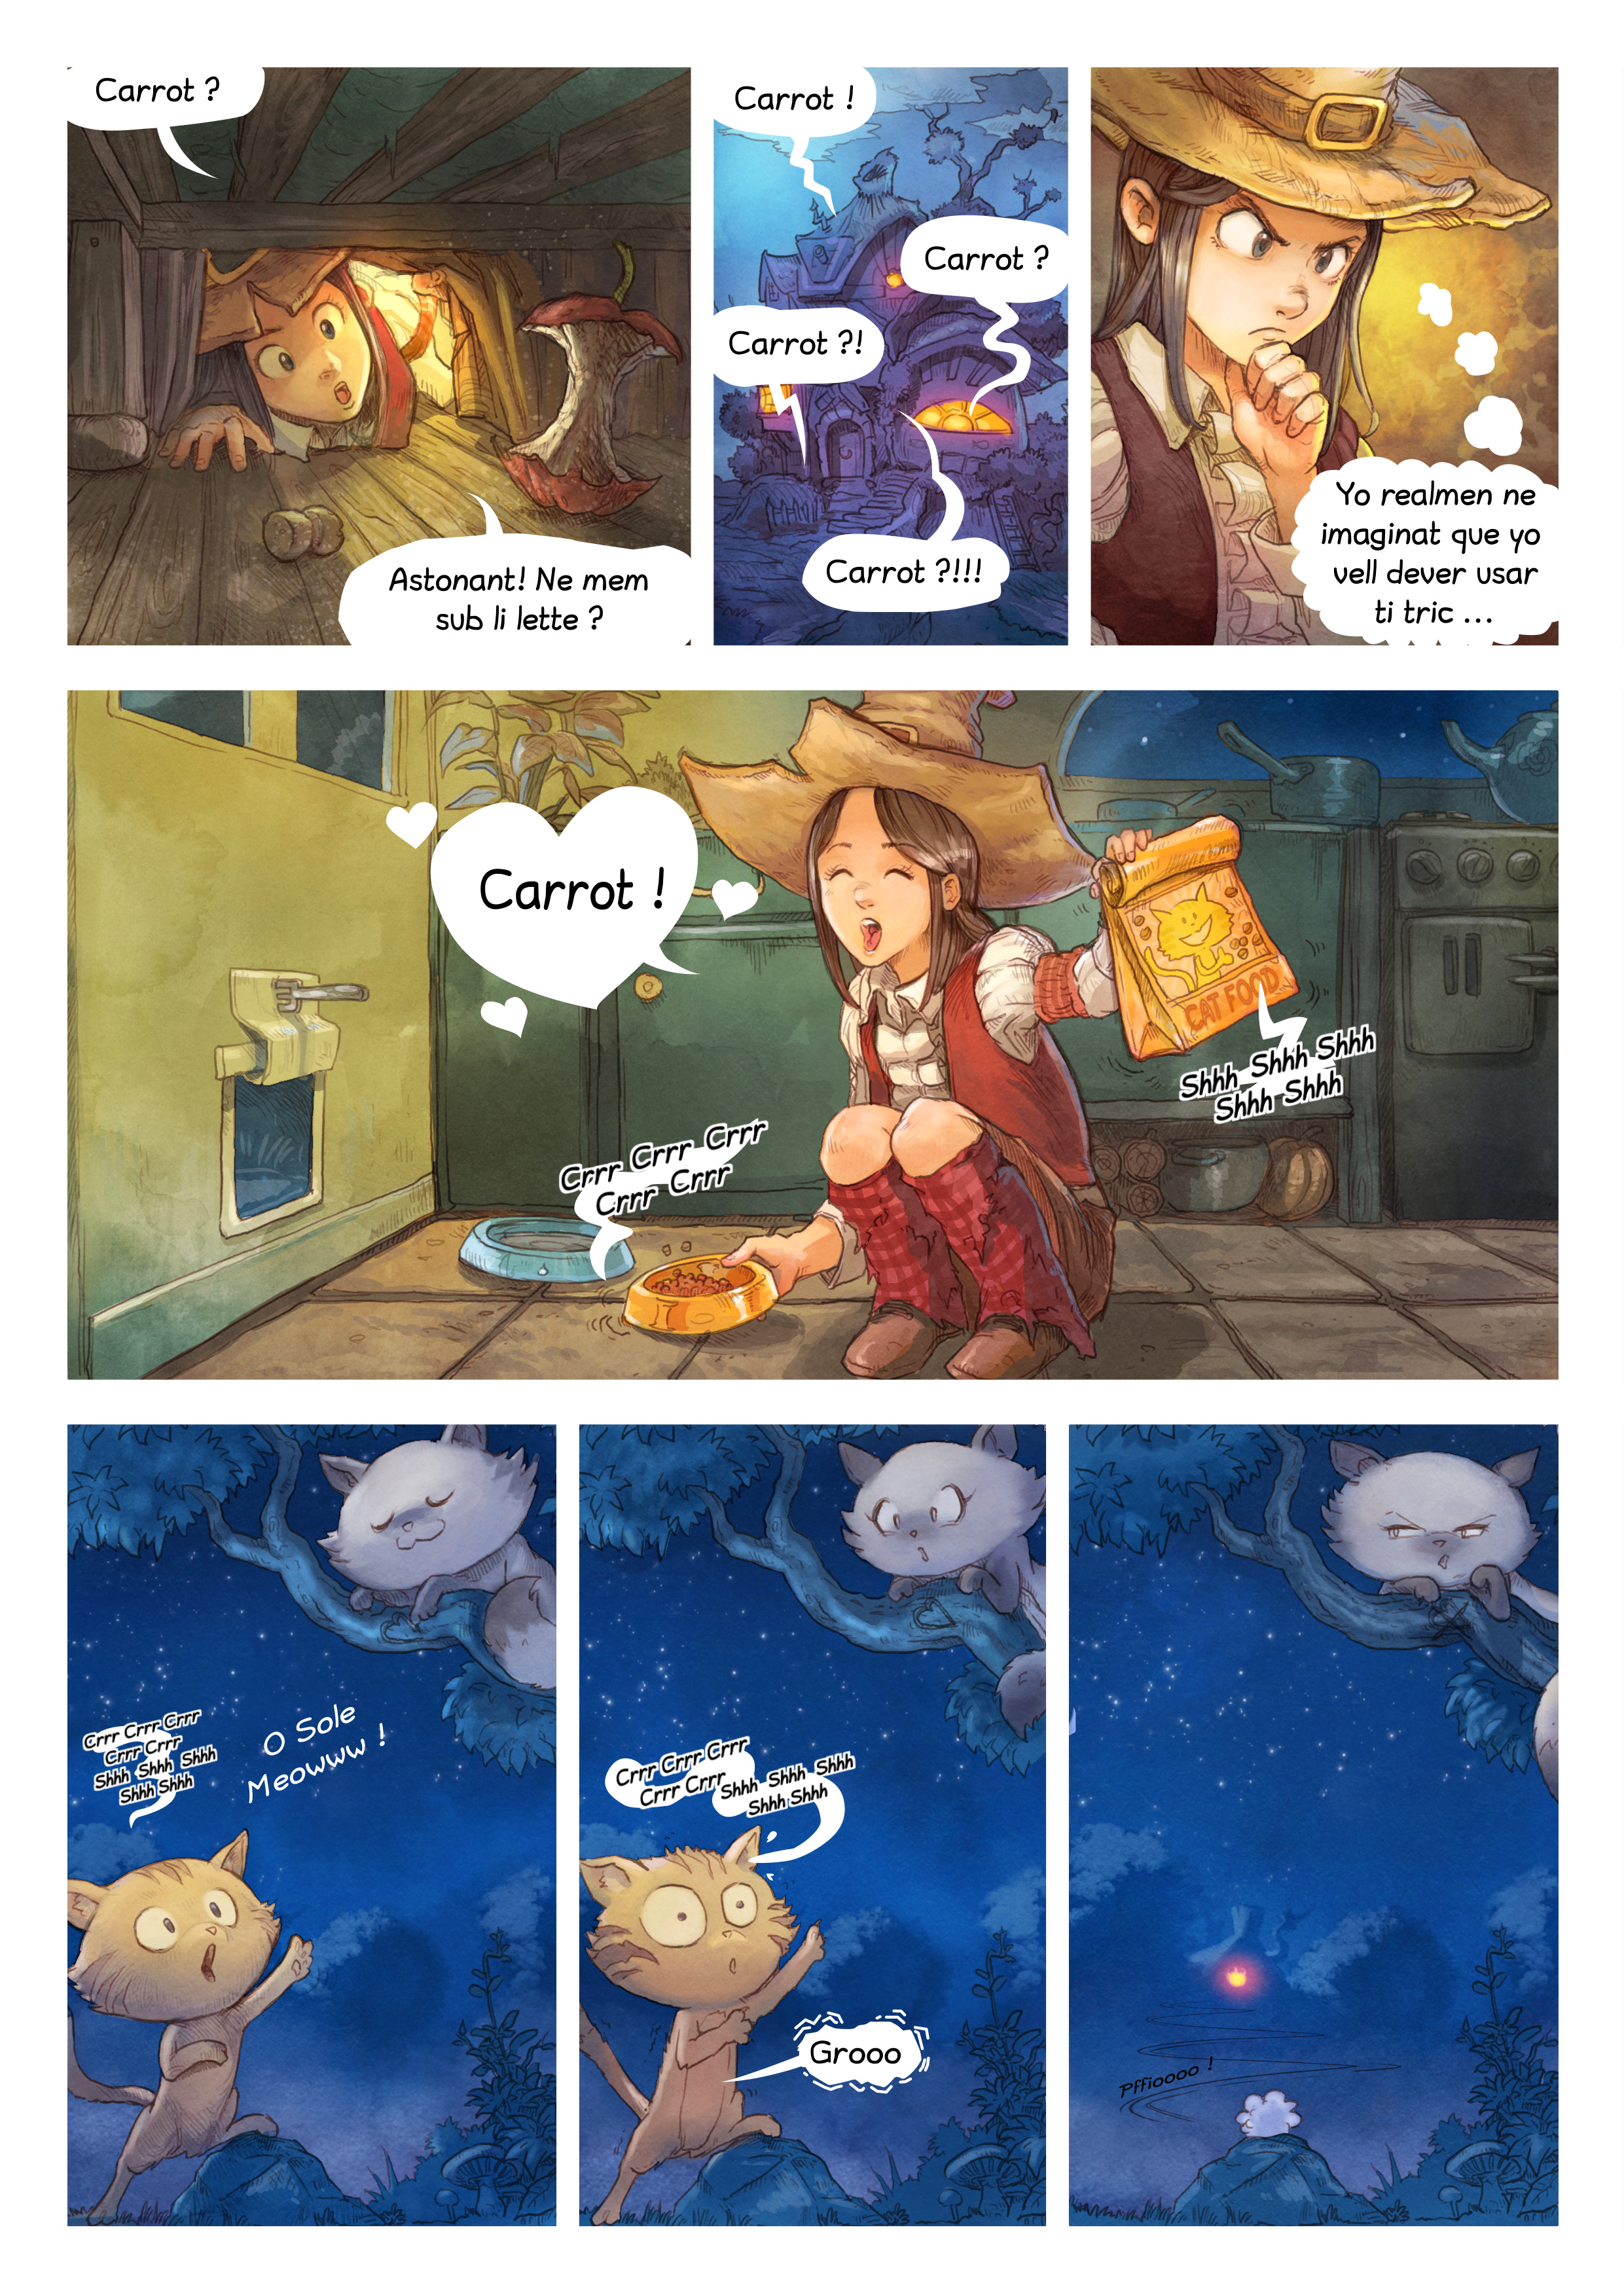 Episode 4: Colpe de Genie, Page 2